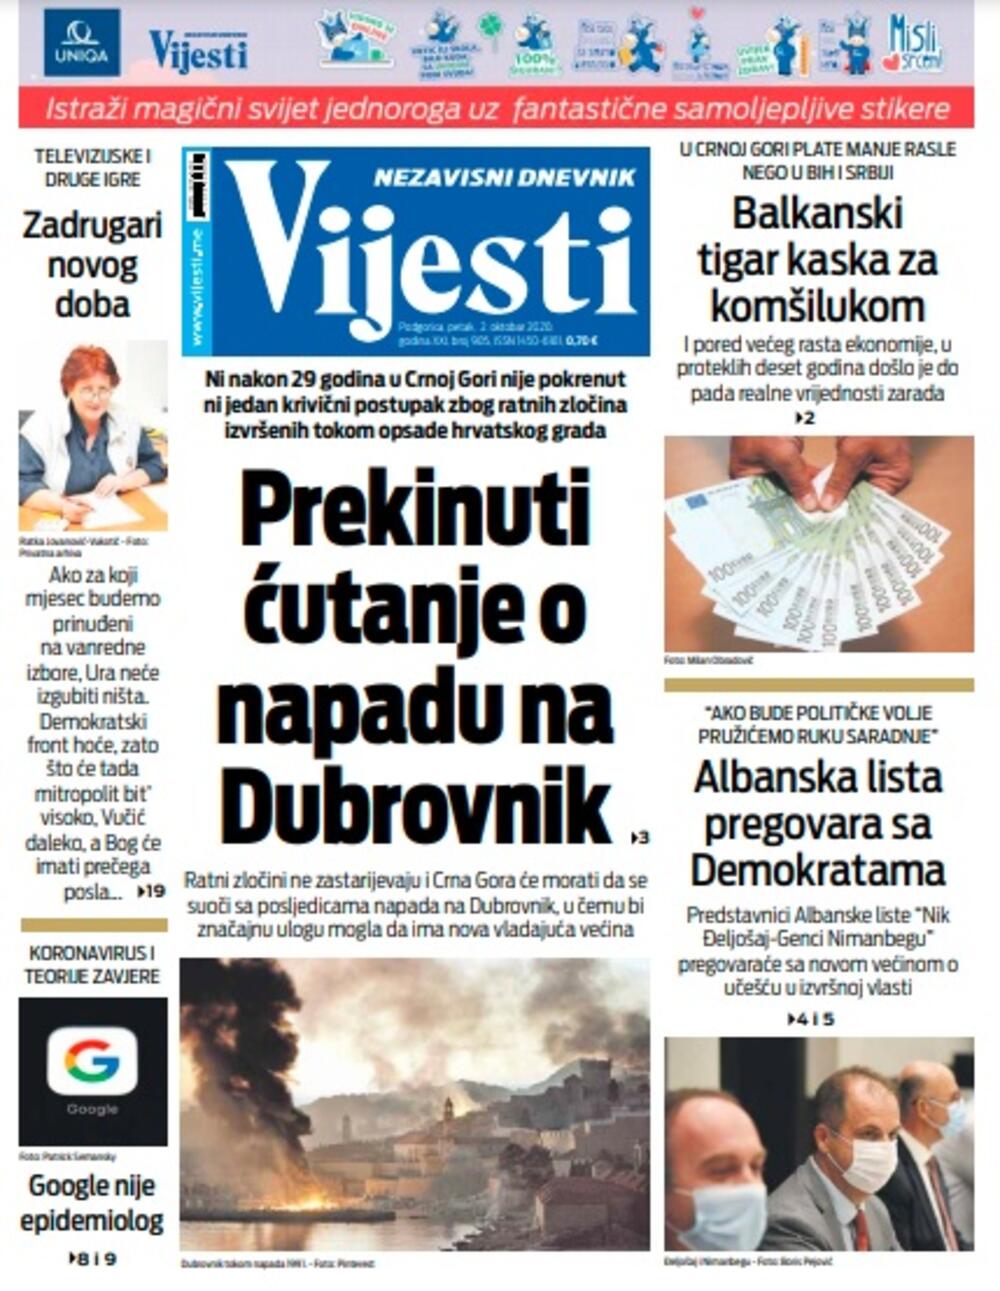 Naslovna strana "Vijesti" za petak 2. oktobar 2020. godine, Foto: Vijesti